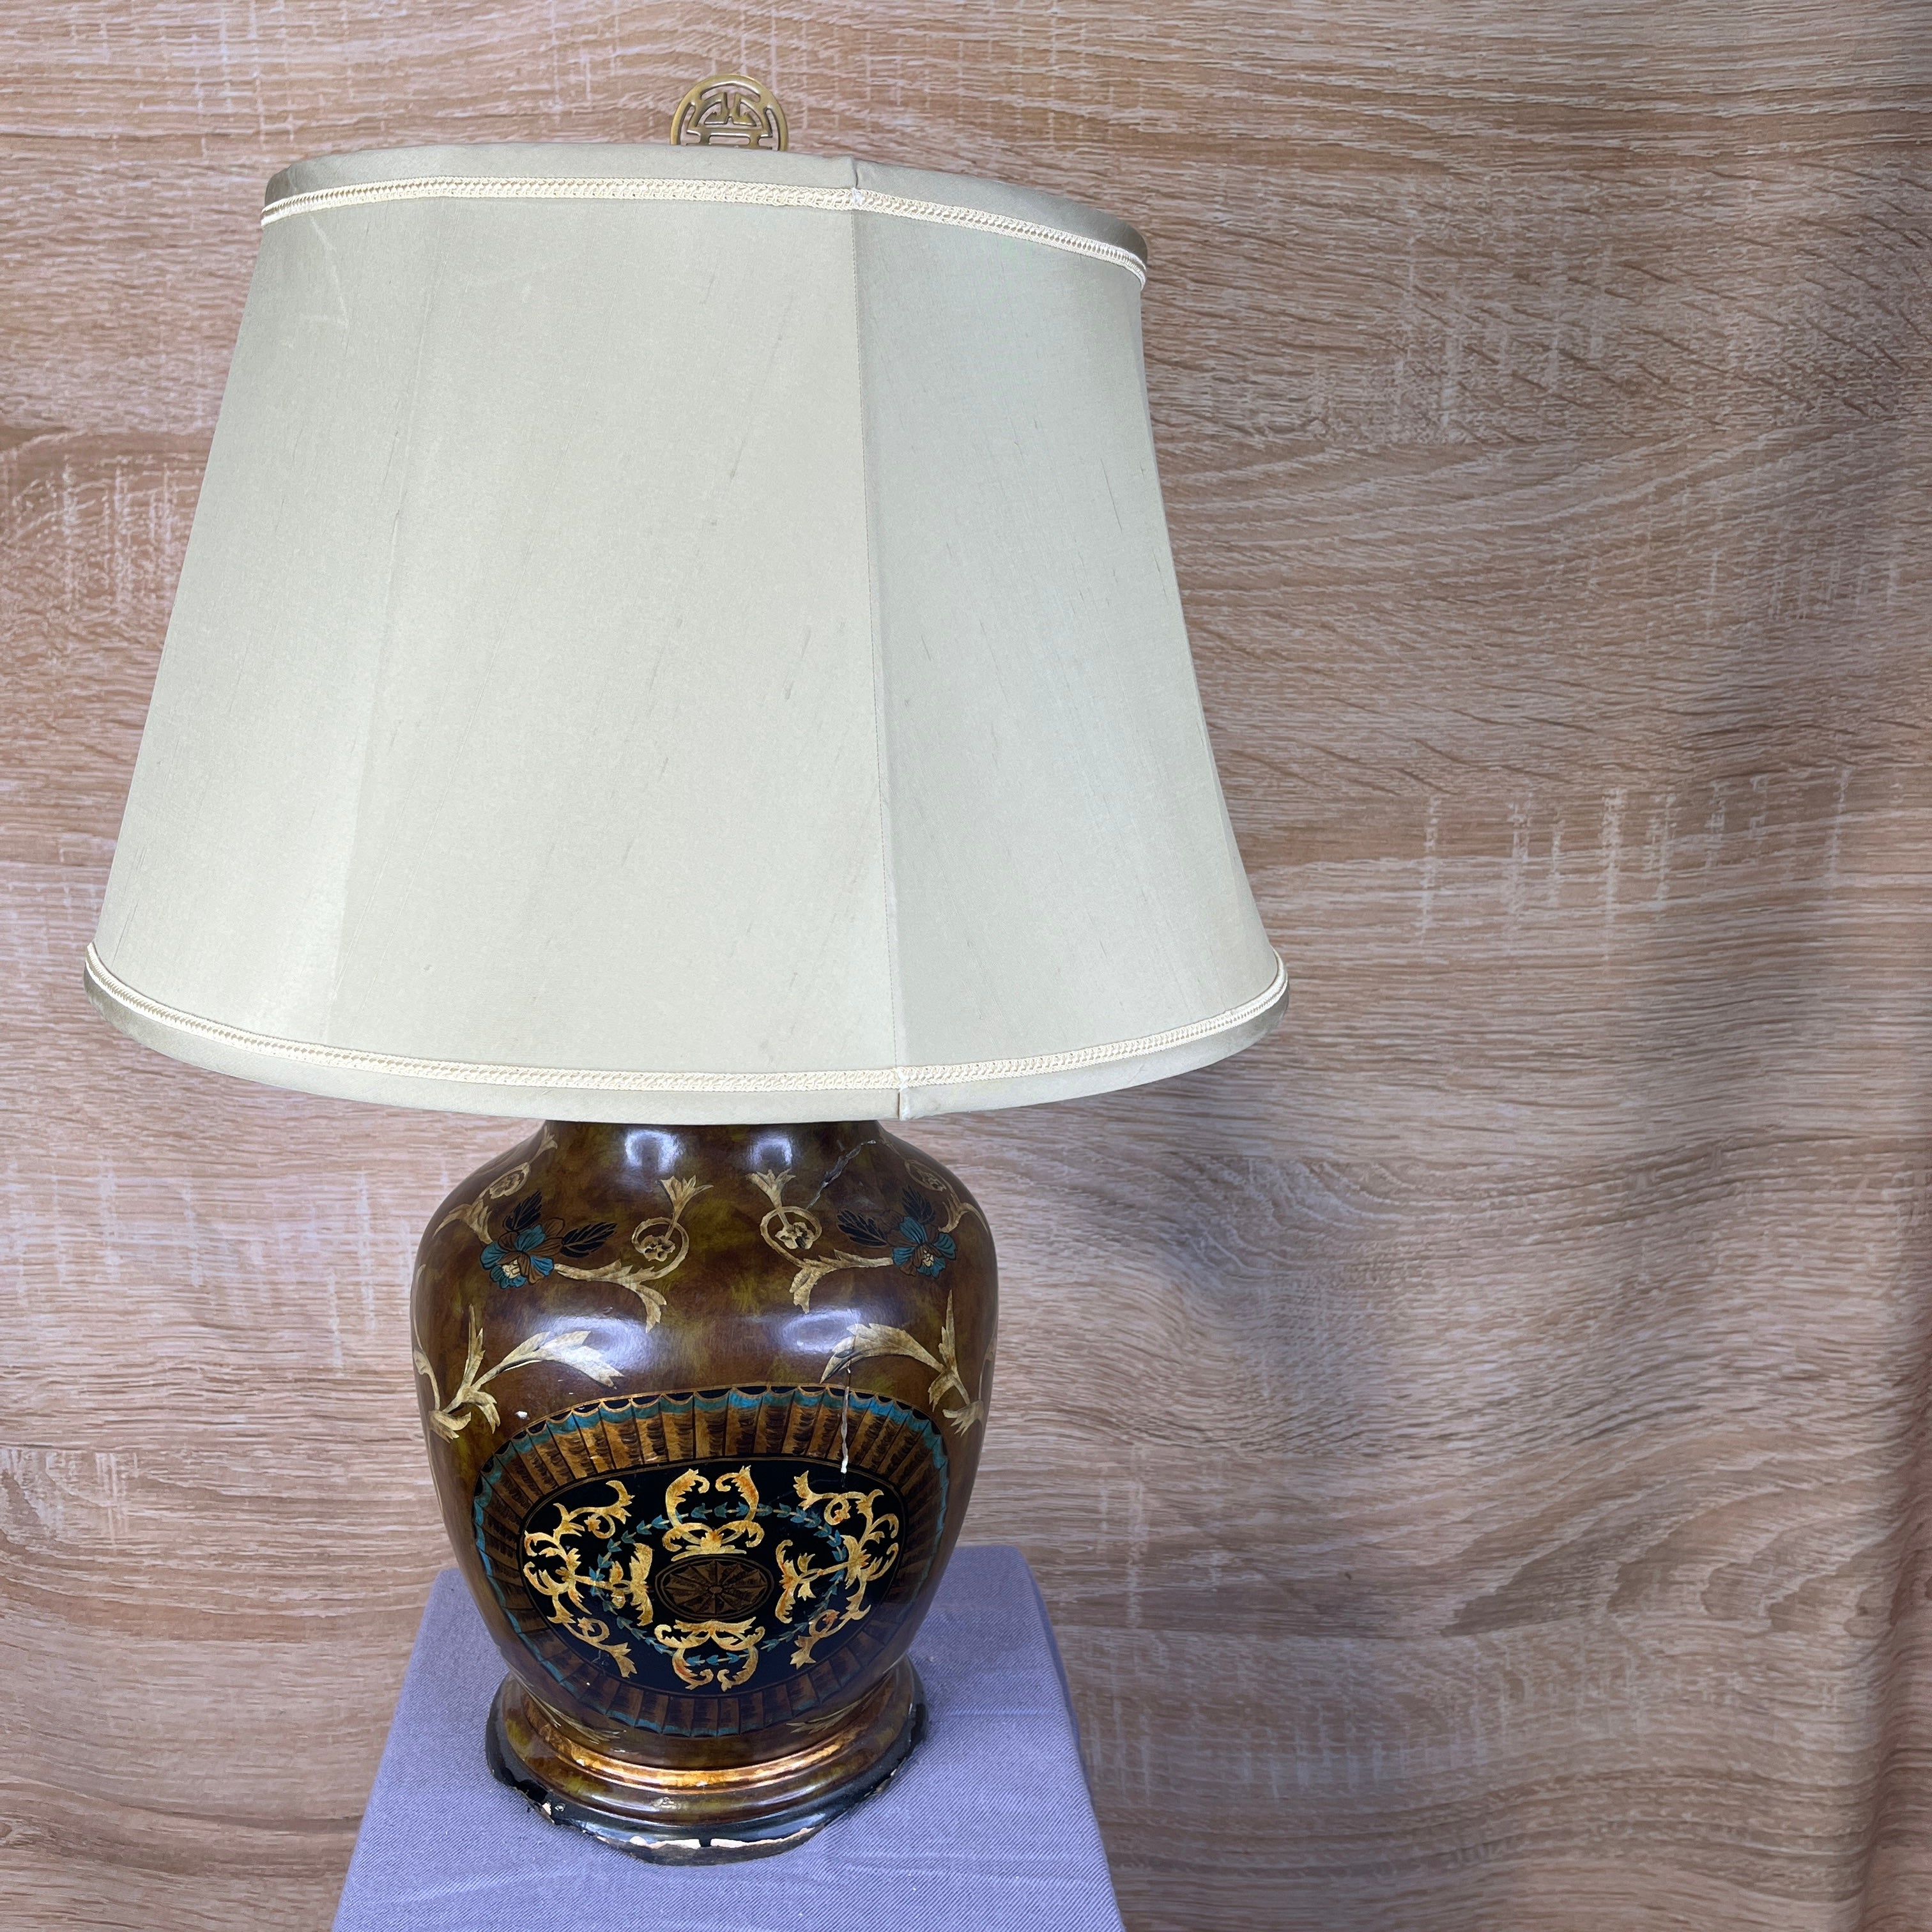 Wildwood Oriental Table Lamp 10" Diameter x 20"